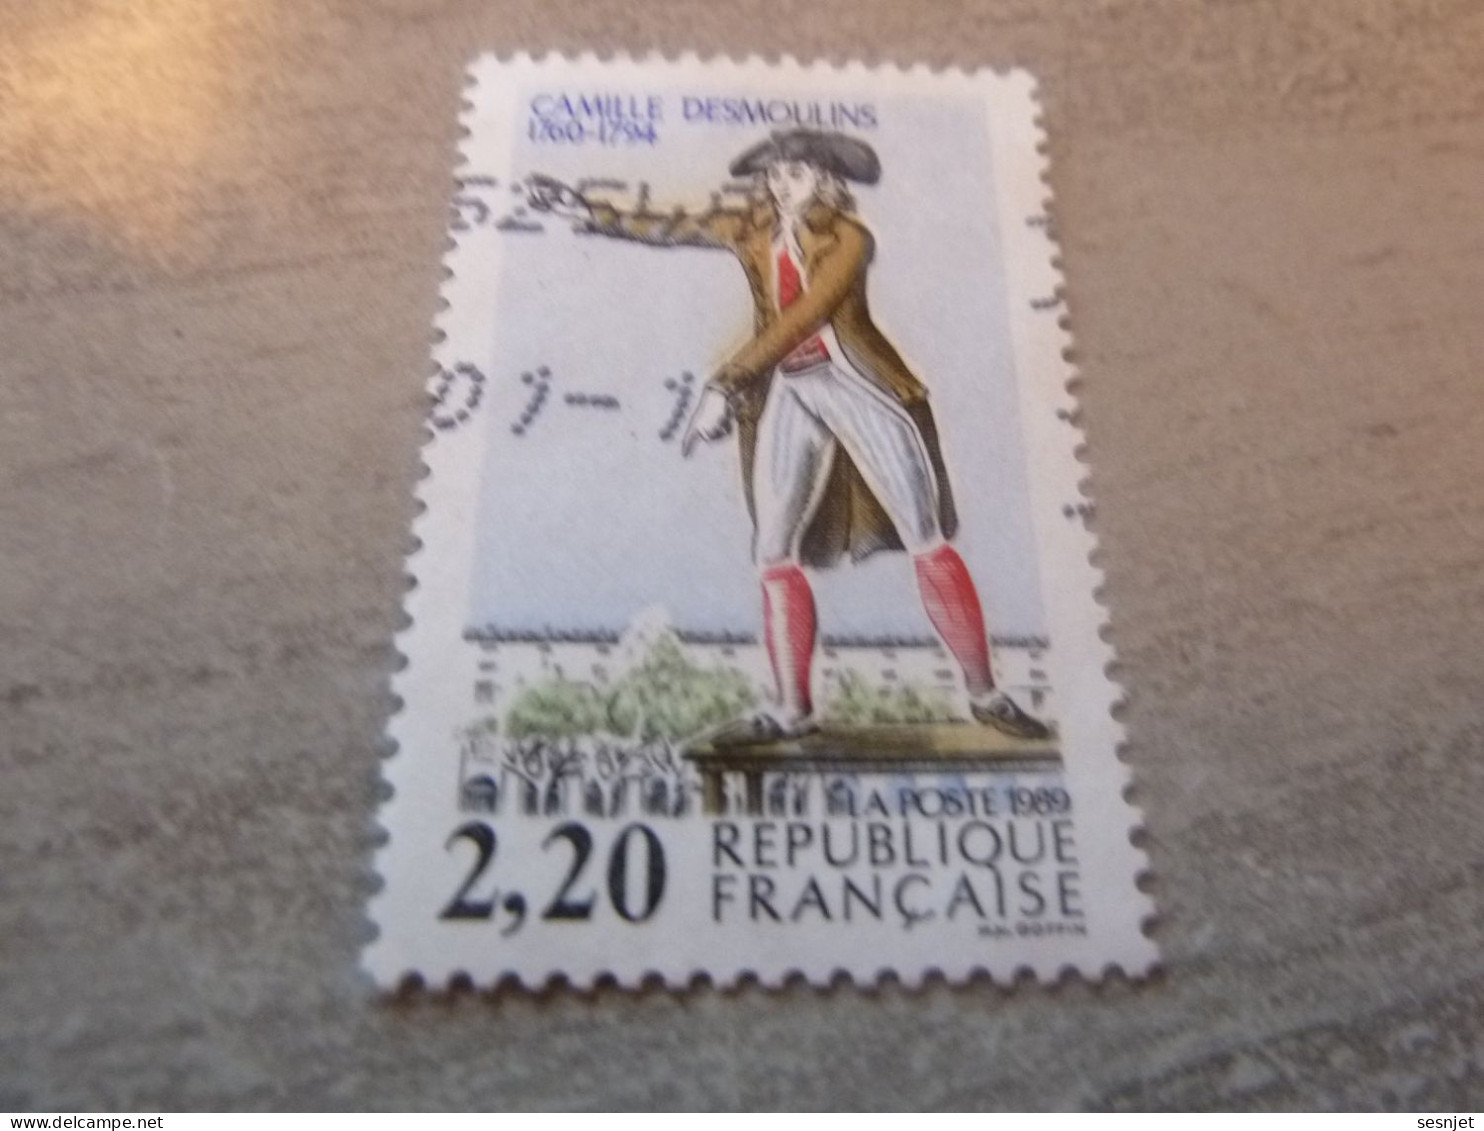 Camille Desmoulins (1760-1794) Avocat Et Journaliste - 2f.20 - Yt 2594 - Multicolore - Oblitéré - Année 1989 - - Used Stamps